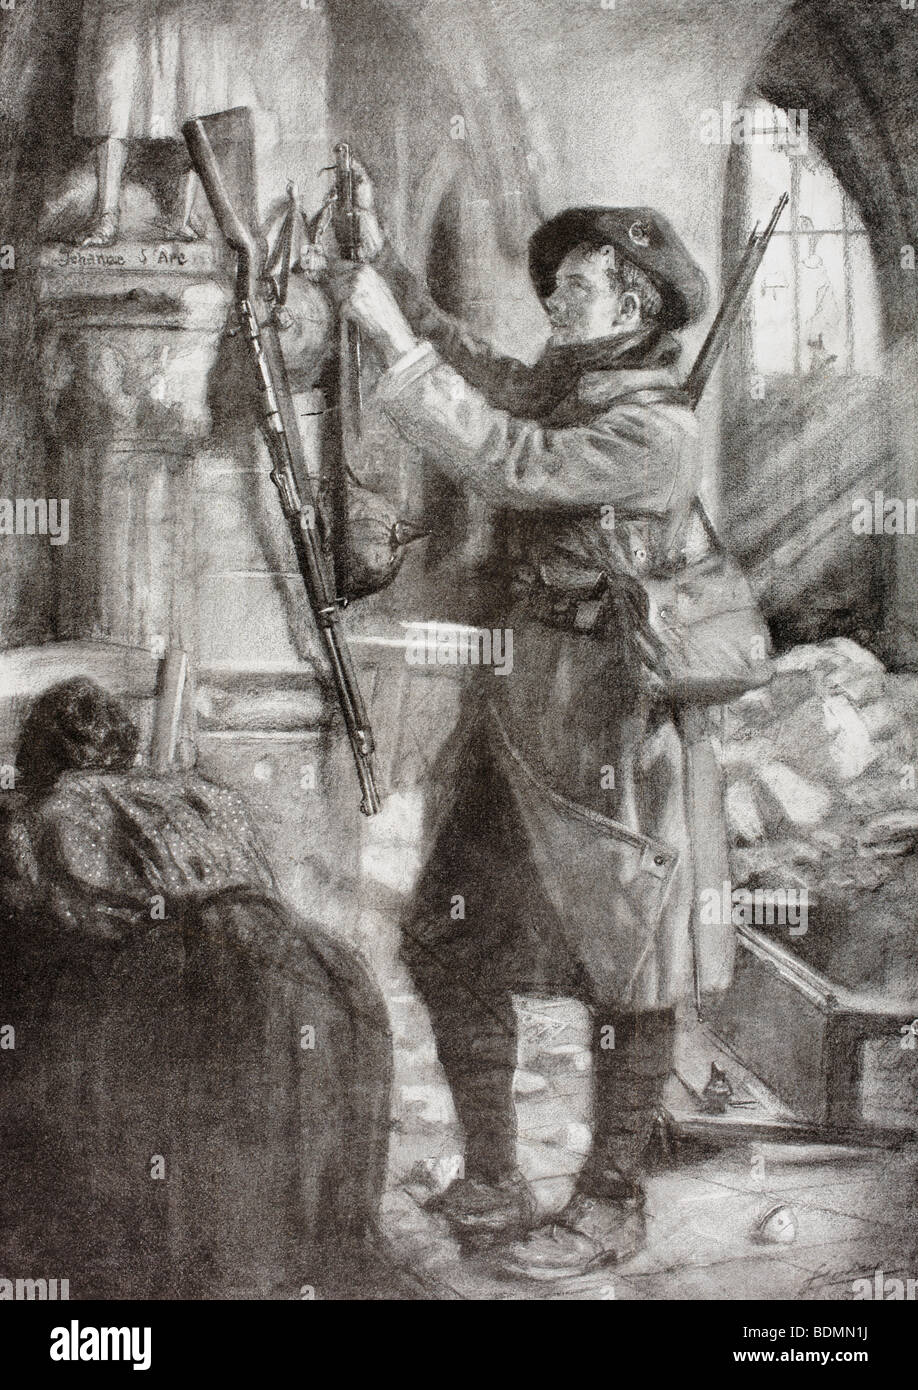 Eine französische Berg-Infanterist hängt ein deutsches Gewehr, Bajonett und Helm zu Füßen der Statue des Heiligen Jeanne d ' Arc Stockfoto